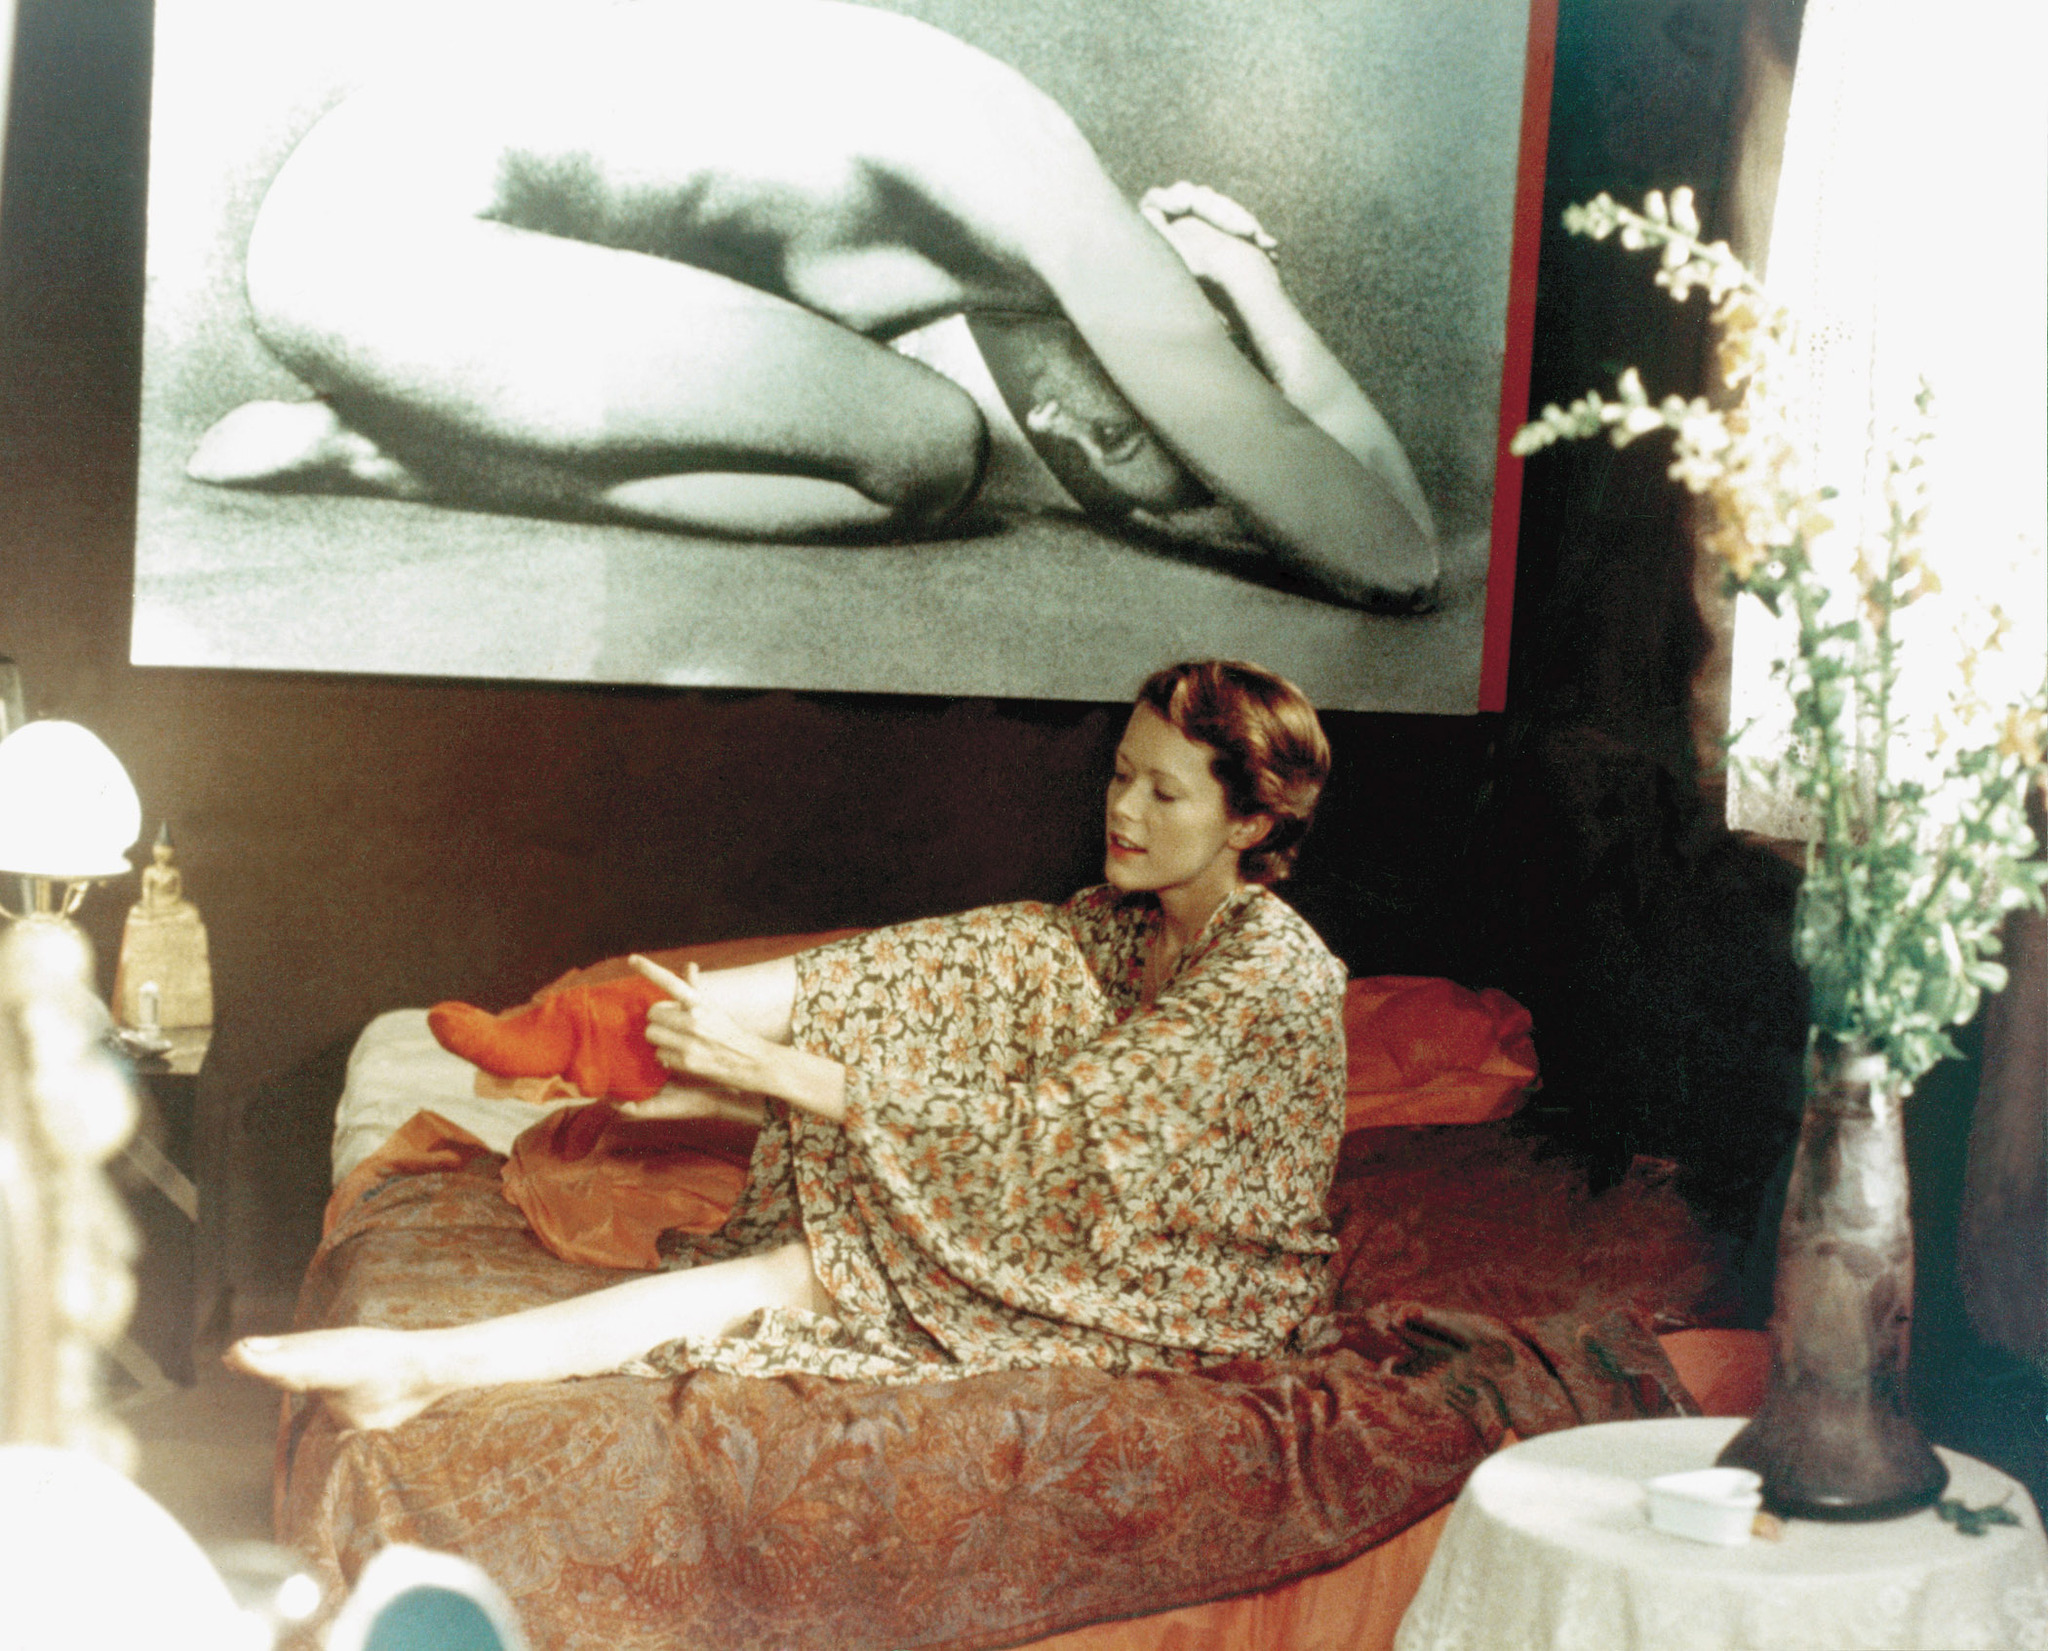 Still of Sylvia Kristel in Emmanuelle (1974)